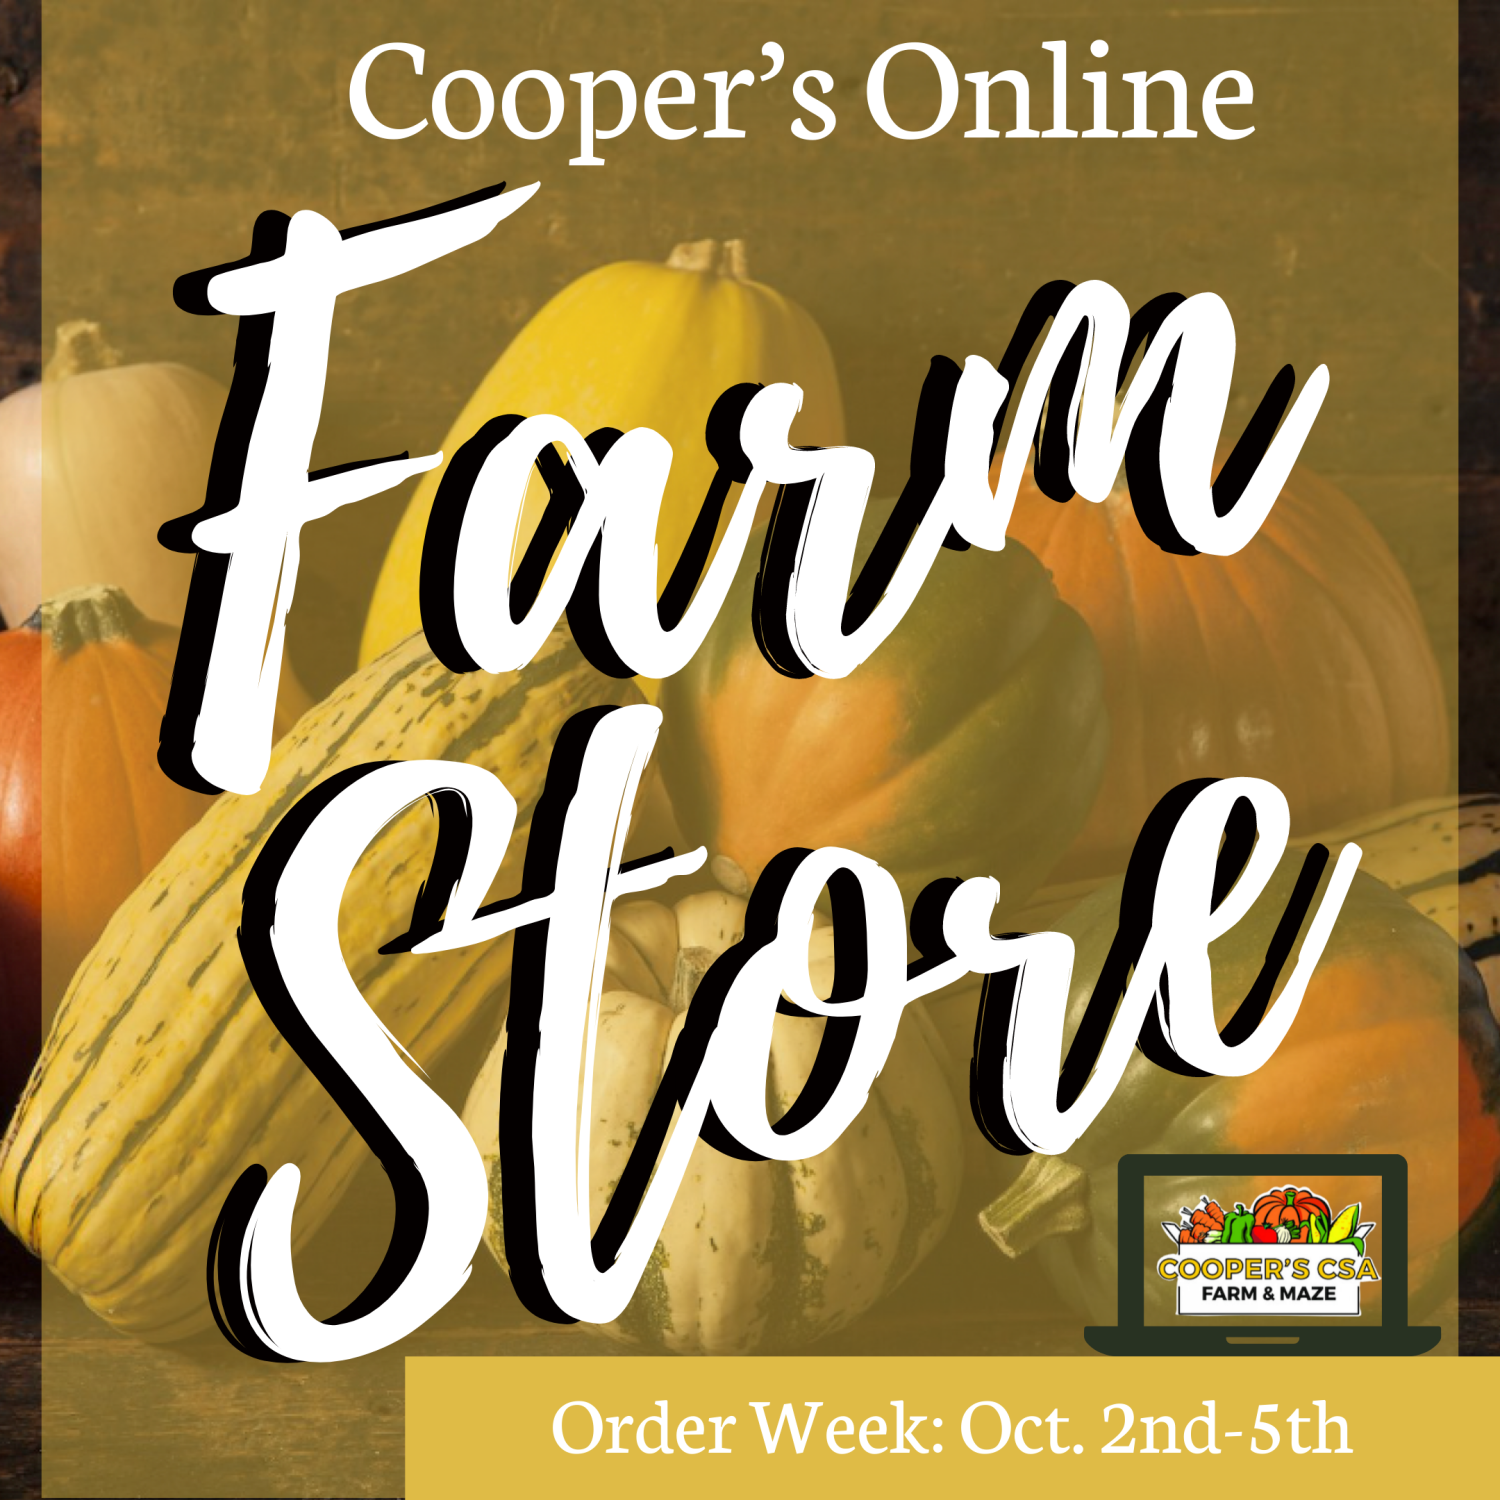 Coopers CSA Online FarmStore- Order week 18